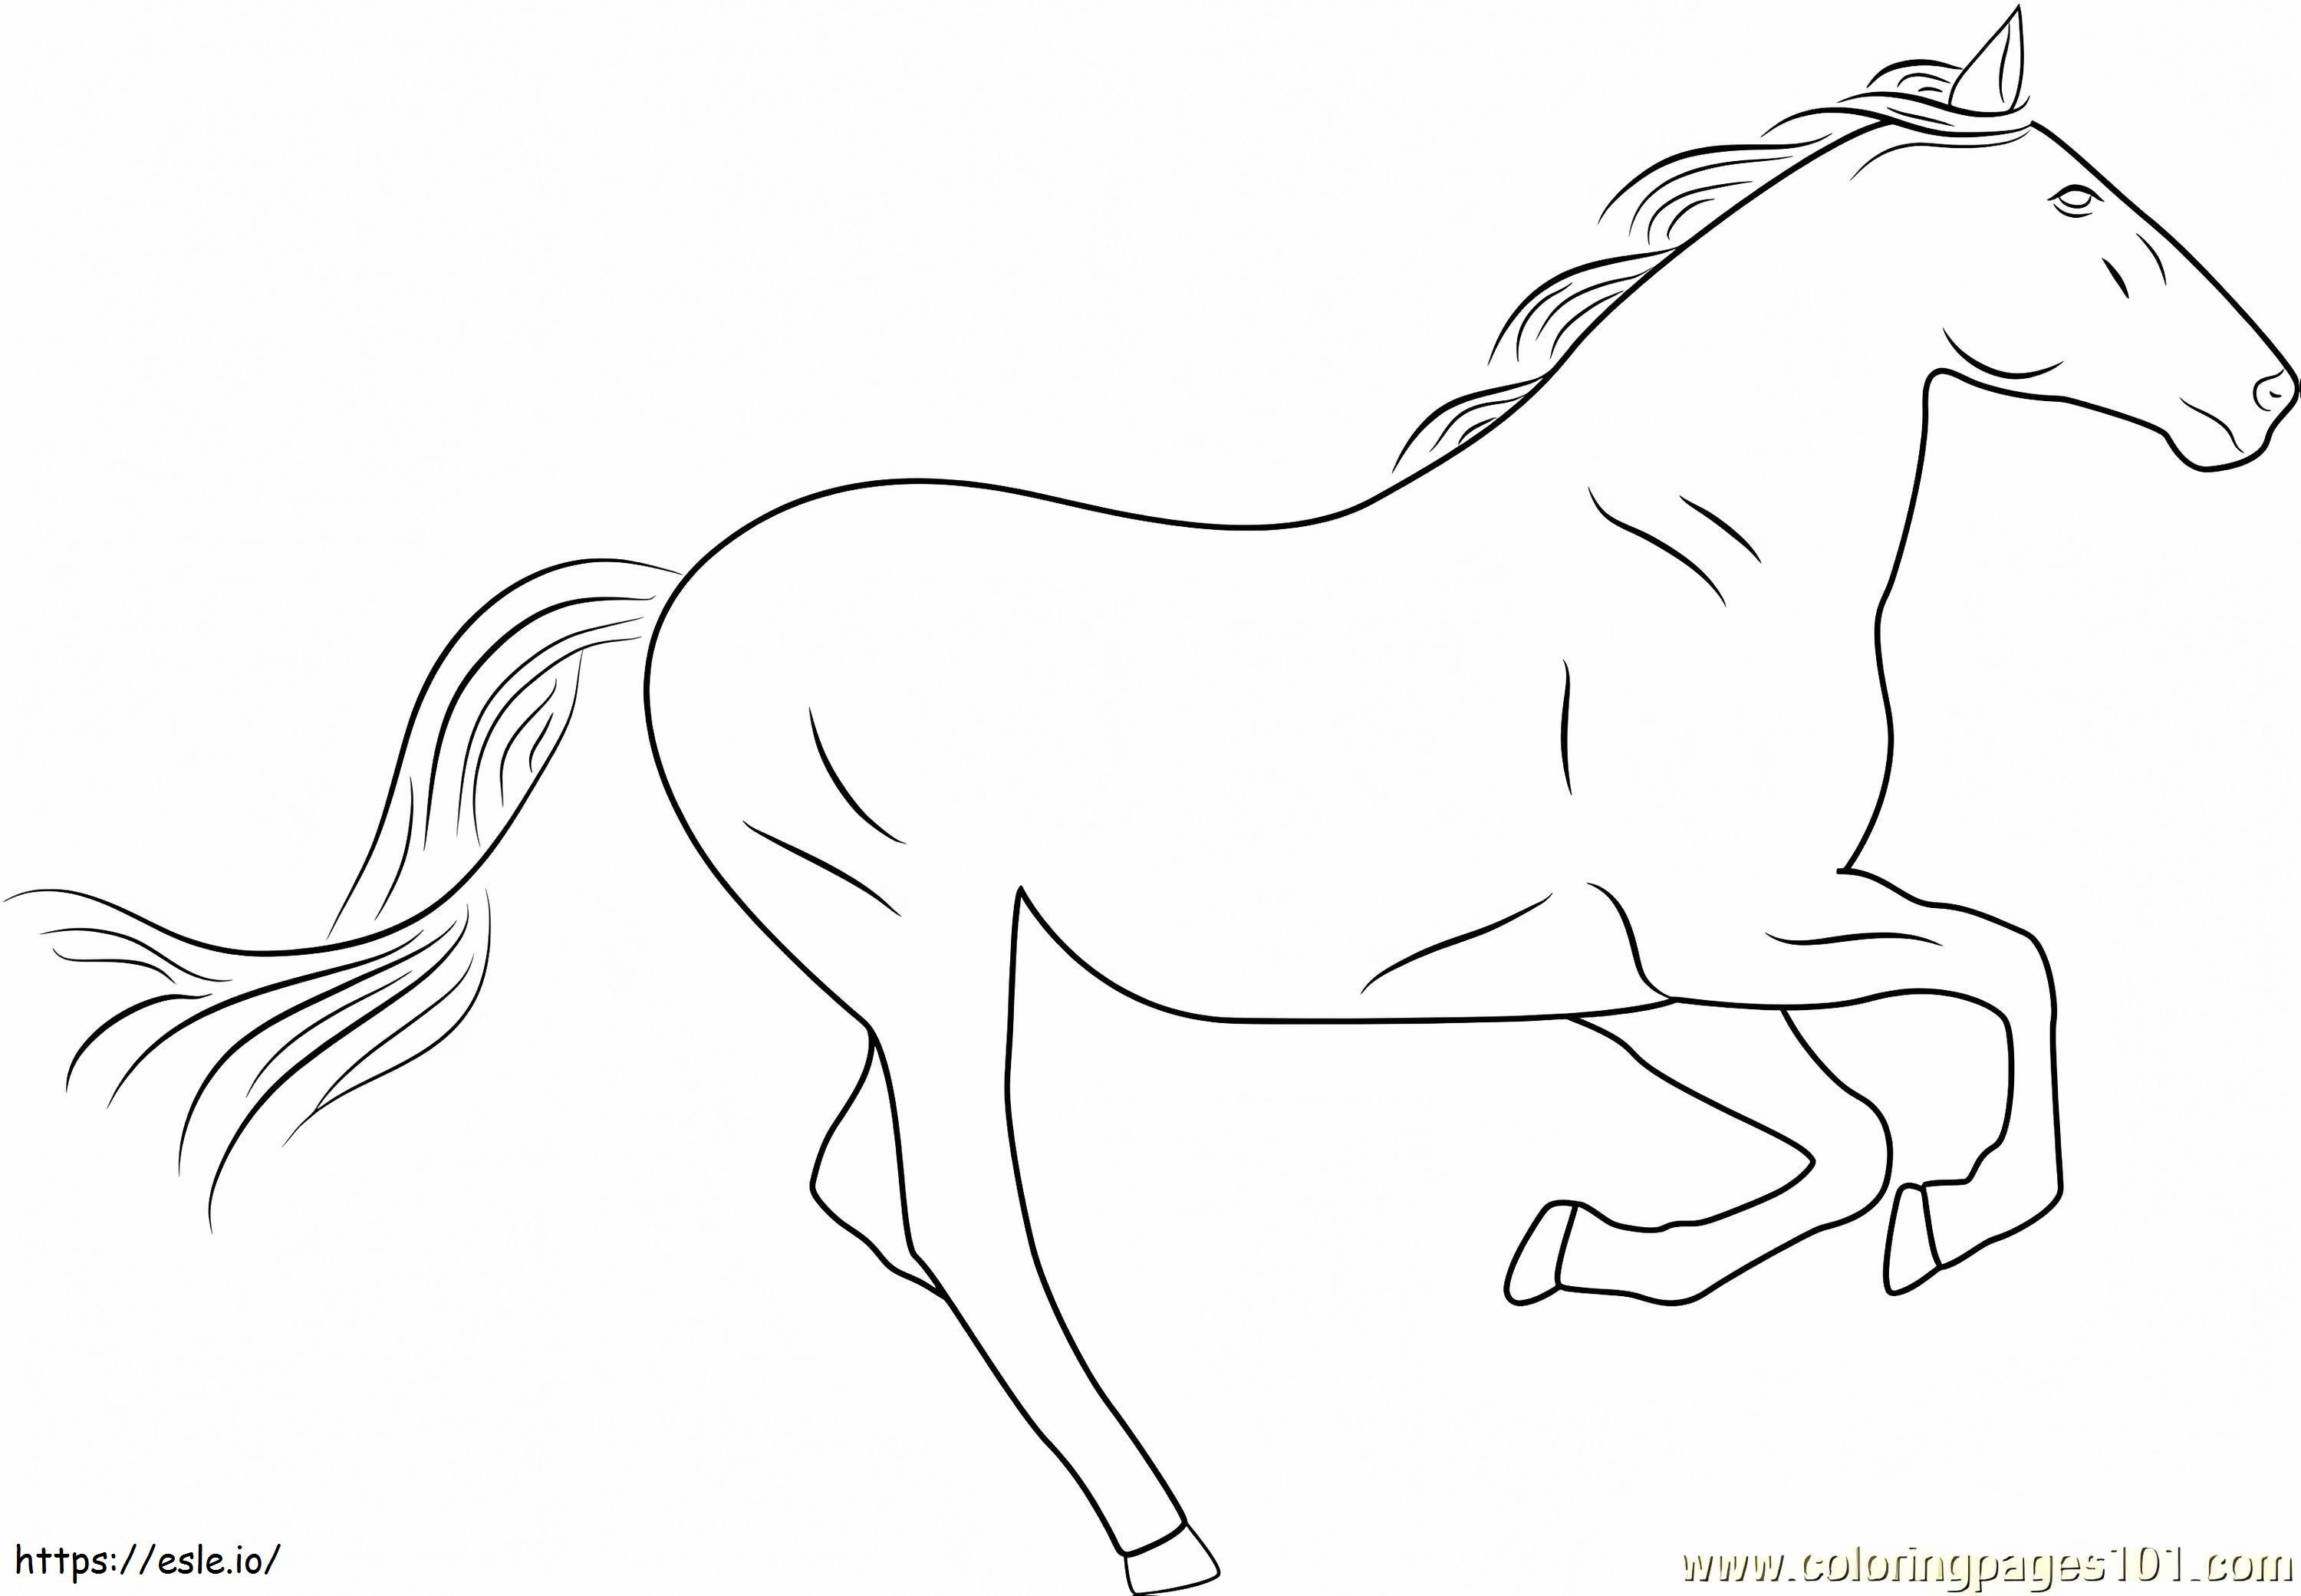 1530154209 Cavallo d'argento1 da colorare